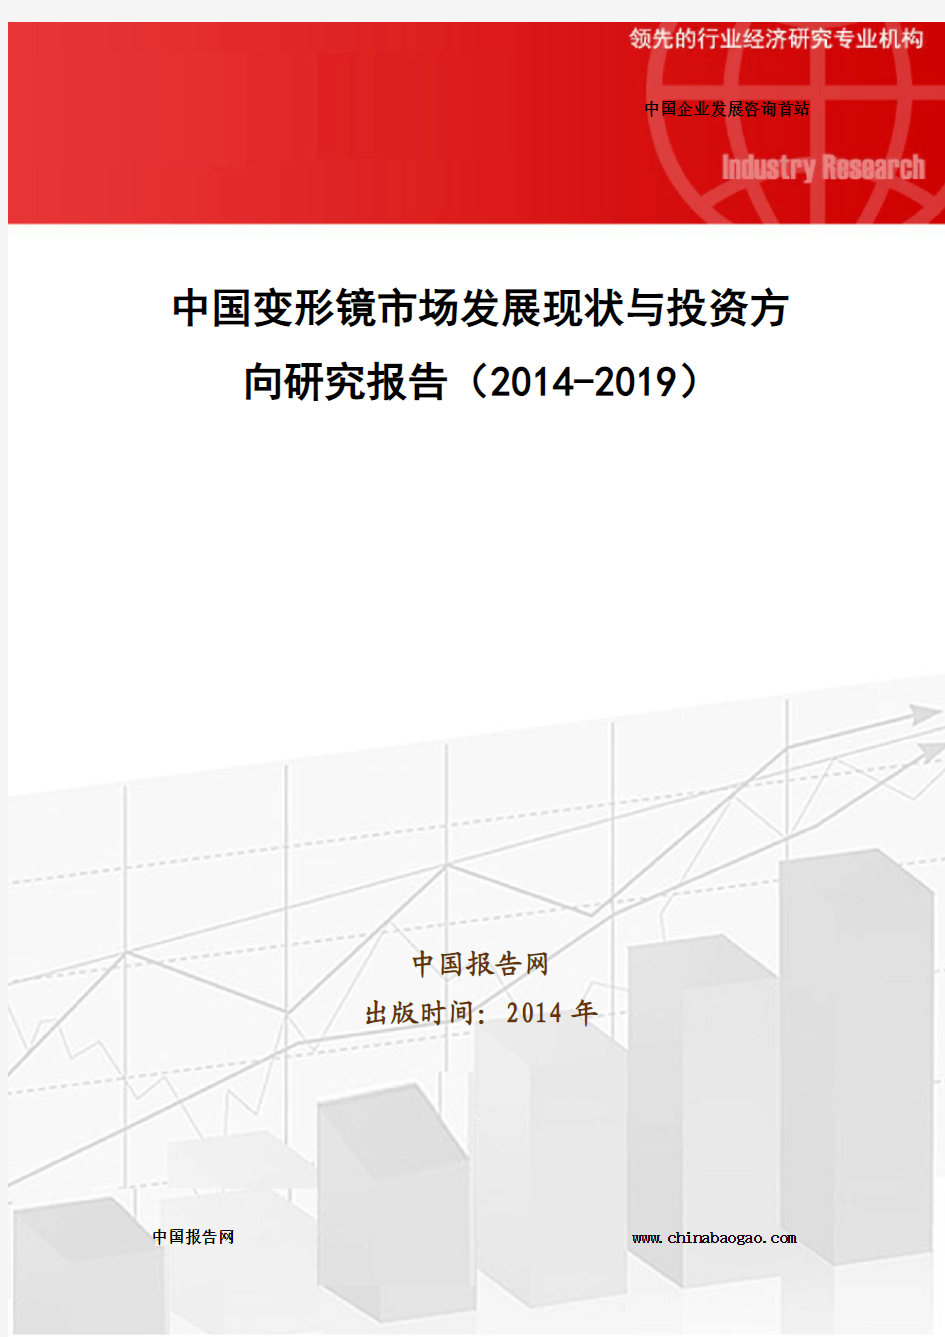 中国变形镜市场发展现状与投资方向研究报告(2014-2019)